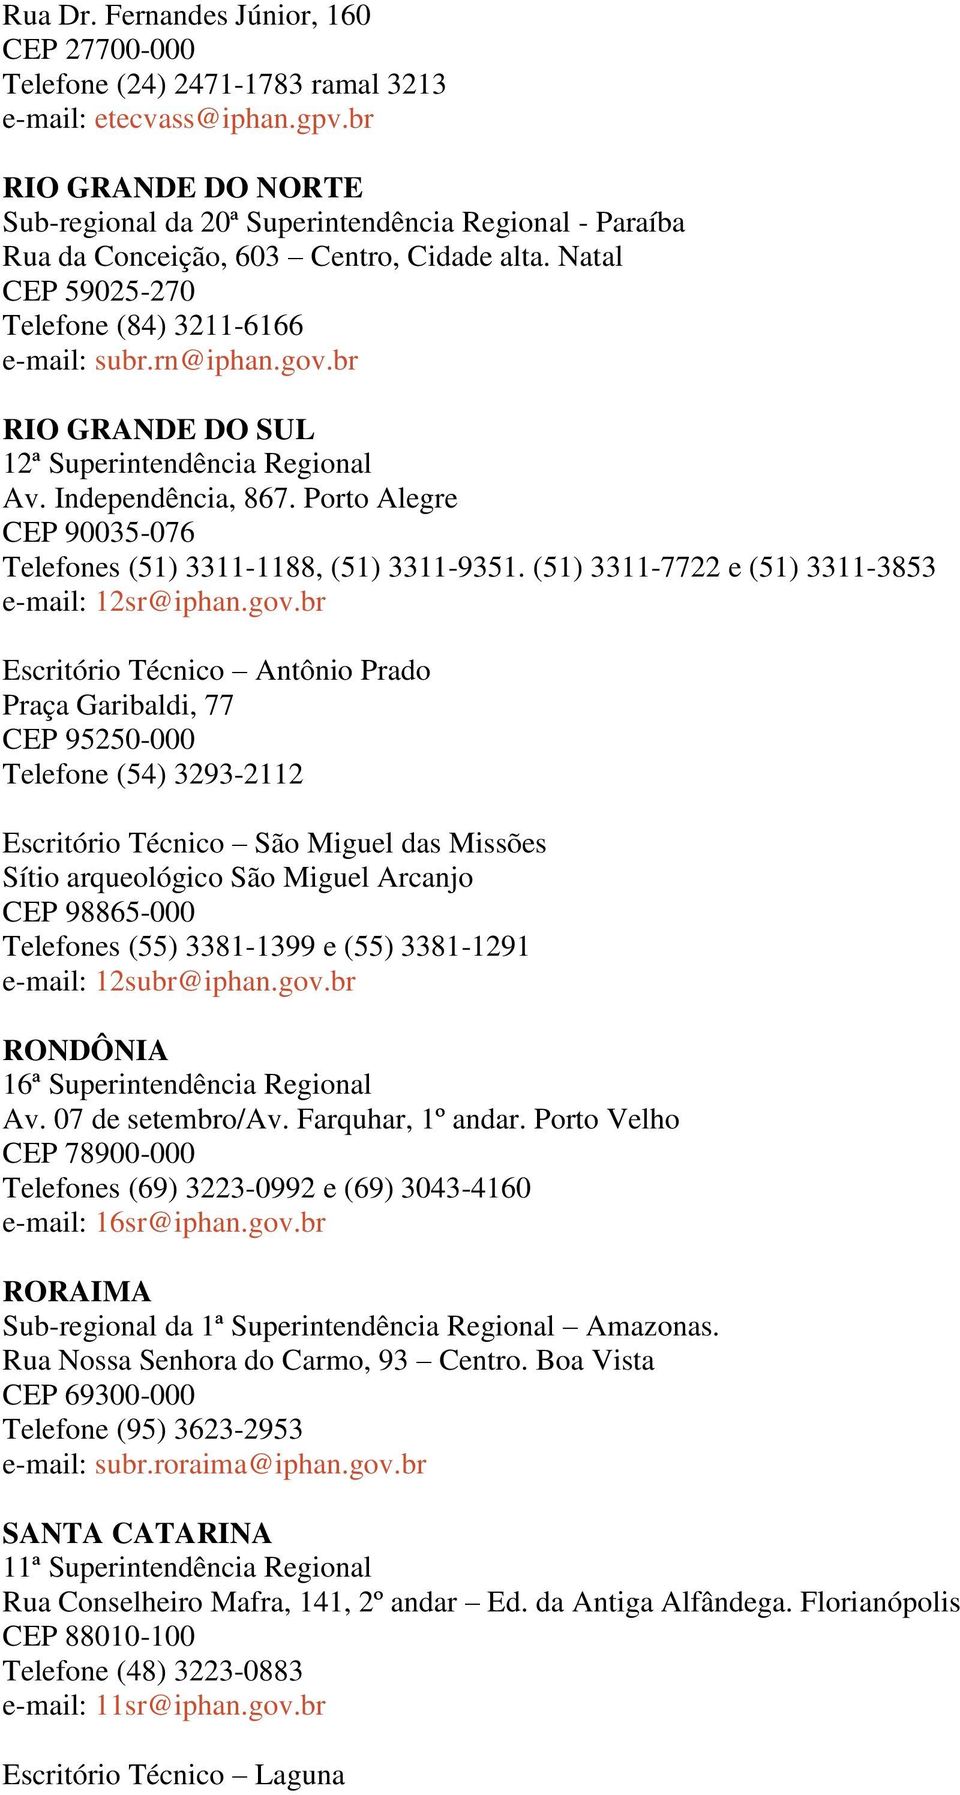 br RIO GRANDE DO SUL 12ª Superintendência Regional Av. Independência, 867. Porto Alegre CEP 90035-076 Telefones (51) 3311-1188, (51) 3311-9351. (51) 3311-7722 e (51) 3311-3853 e-mail: 12sr@iphan.gov.